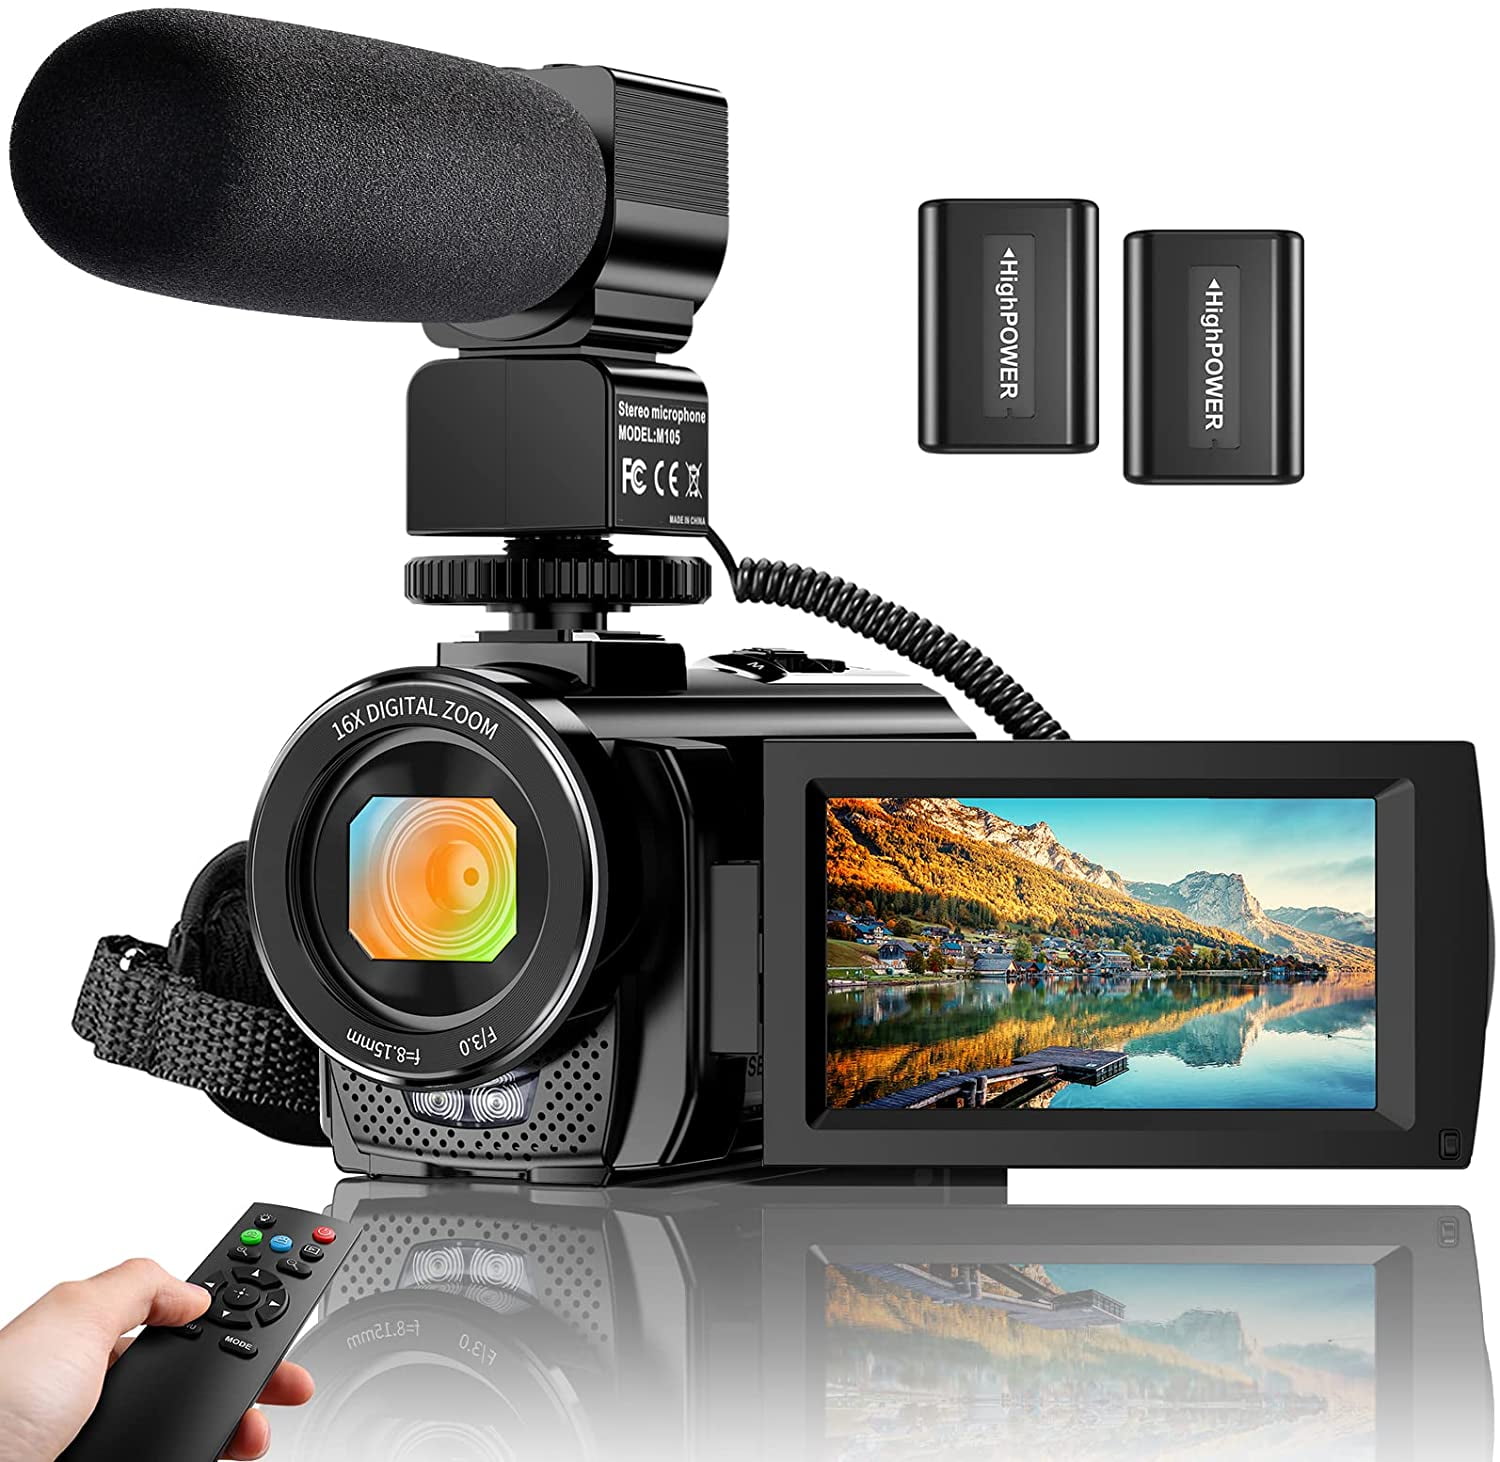 Digital Camera Vlogging Camera 2.7K 24MP Full HD Camera for YouTube 3.0 Inch 180 